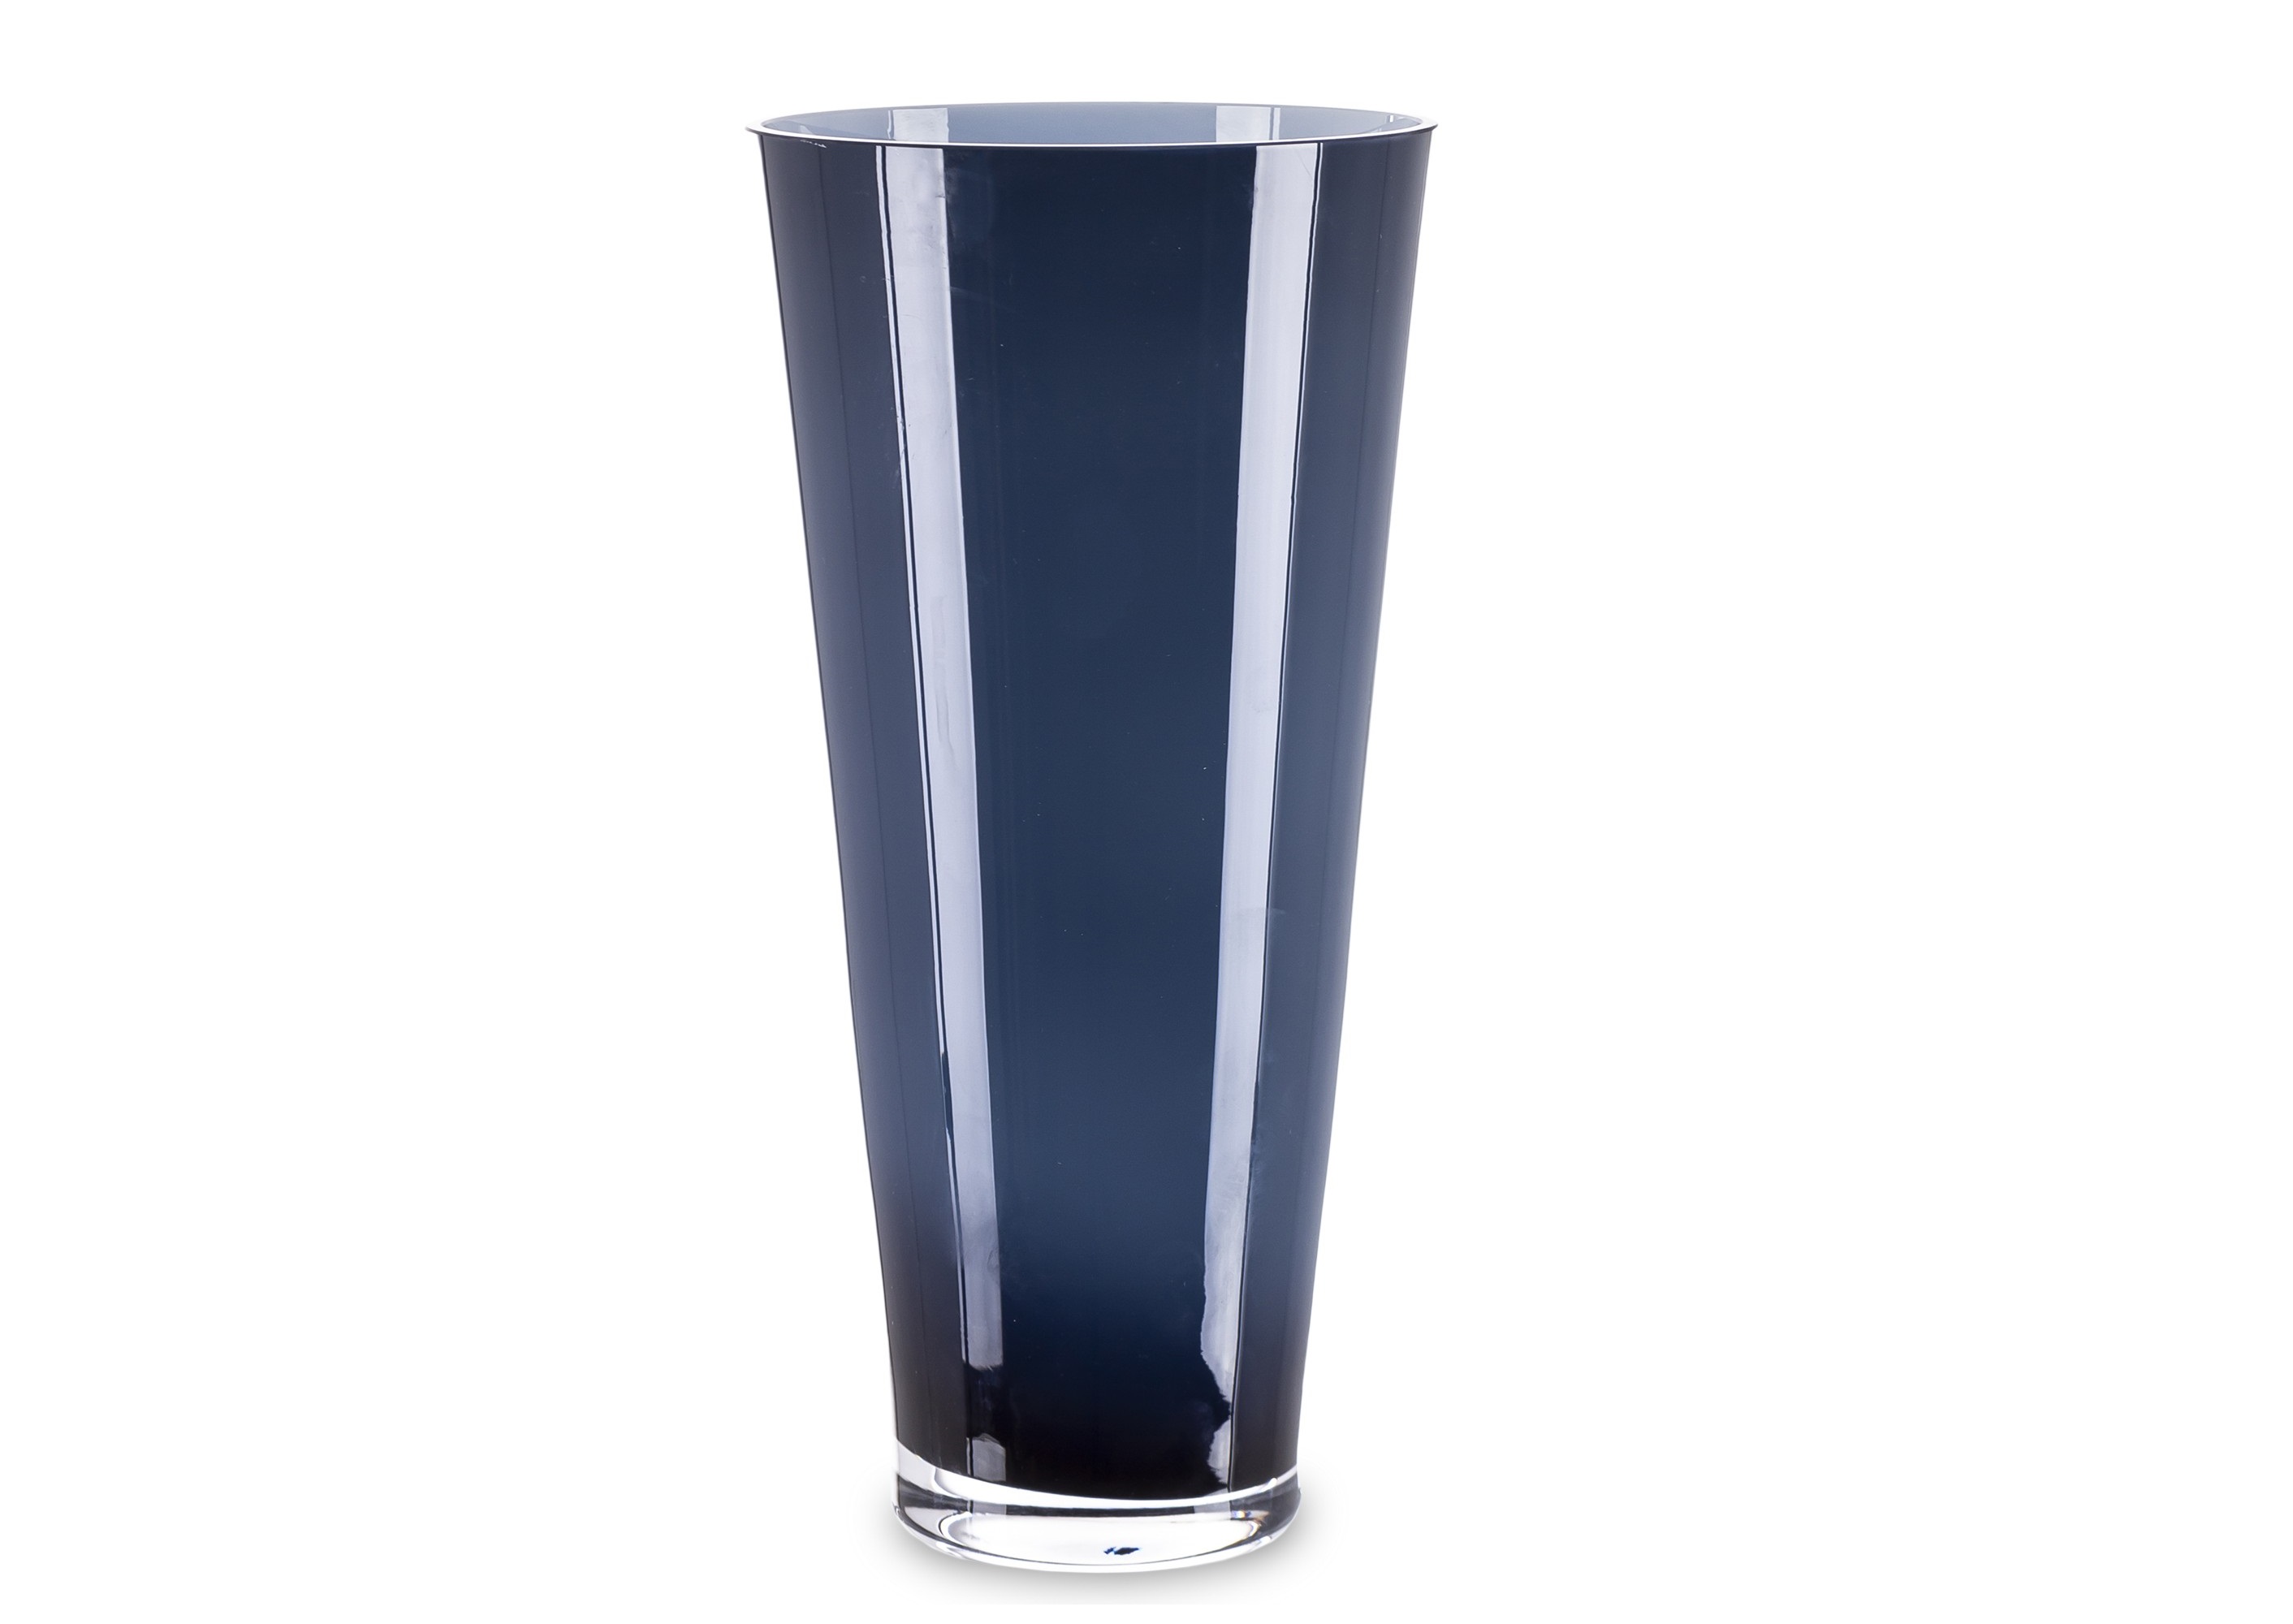 Wazon szklany wysoki 32 cm niebieski AP162965